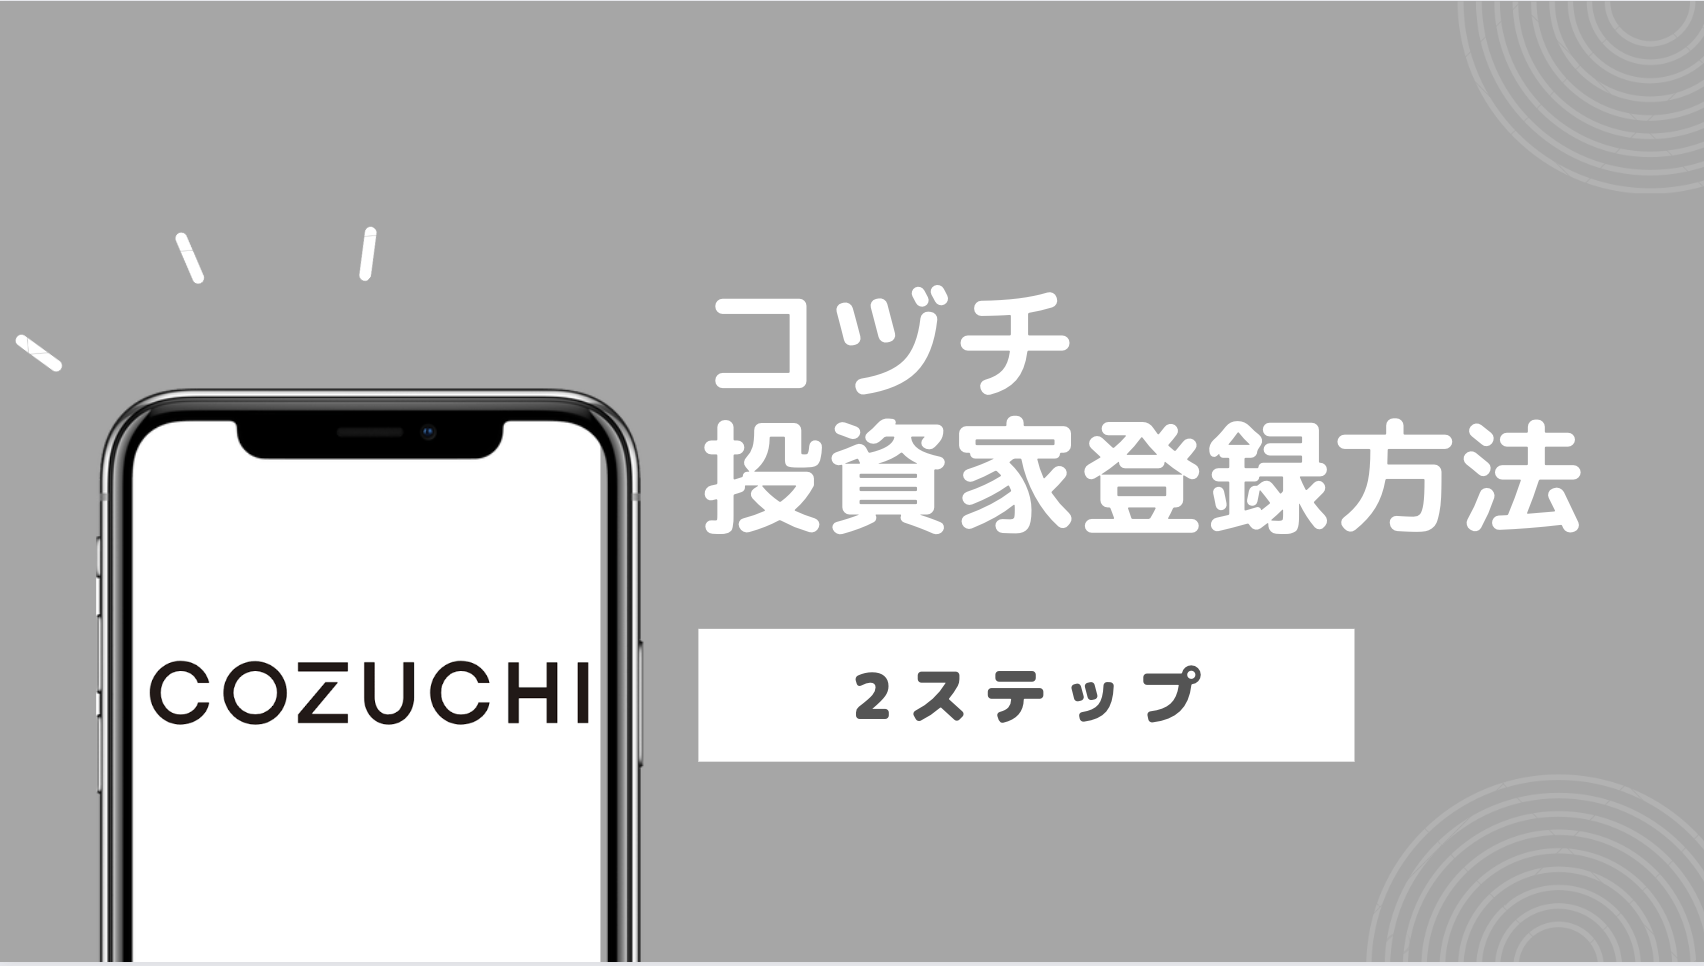 【初心者向け】COZUCHI (コヅチ)投資家登録方法